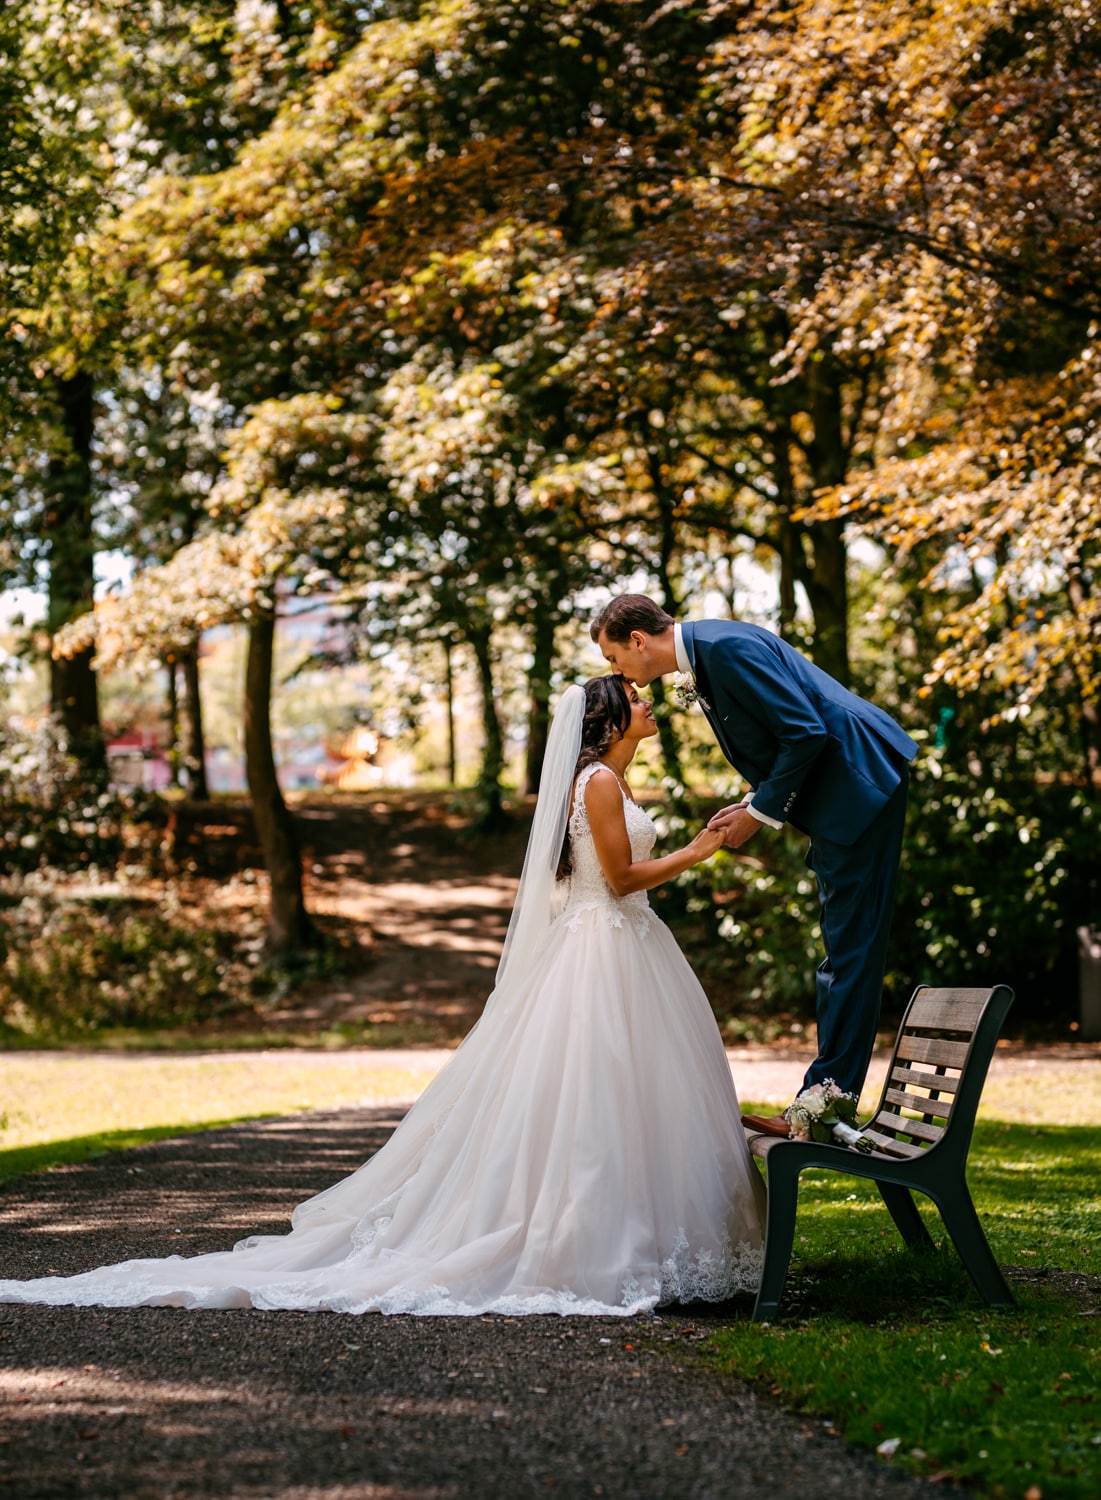 Een bruid en bruidegom die elkaar hartstochtelijk kussen op een bankje in het park en het mooie moment vastleggen door de lens van een ervaren bruiloftsfotograaf.